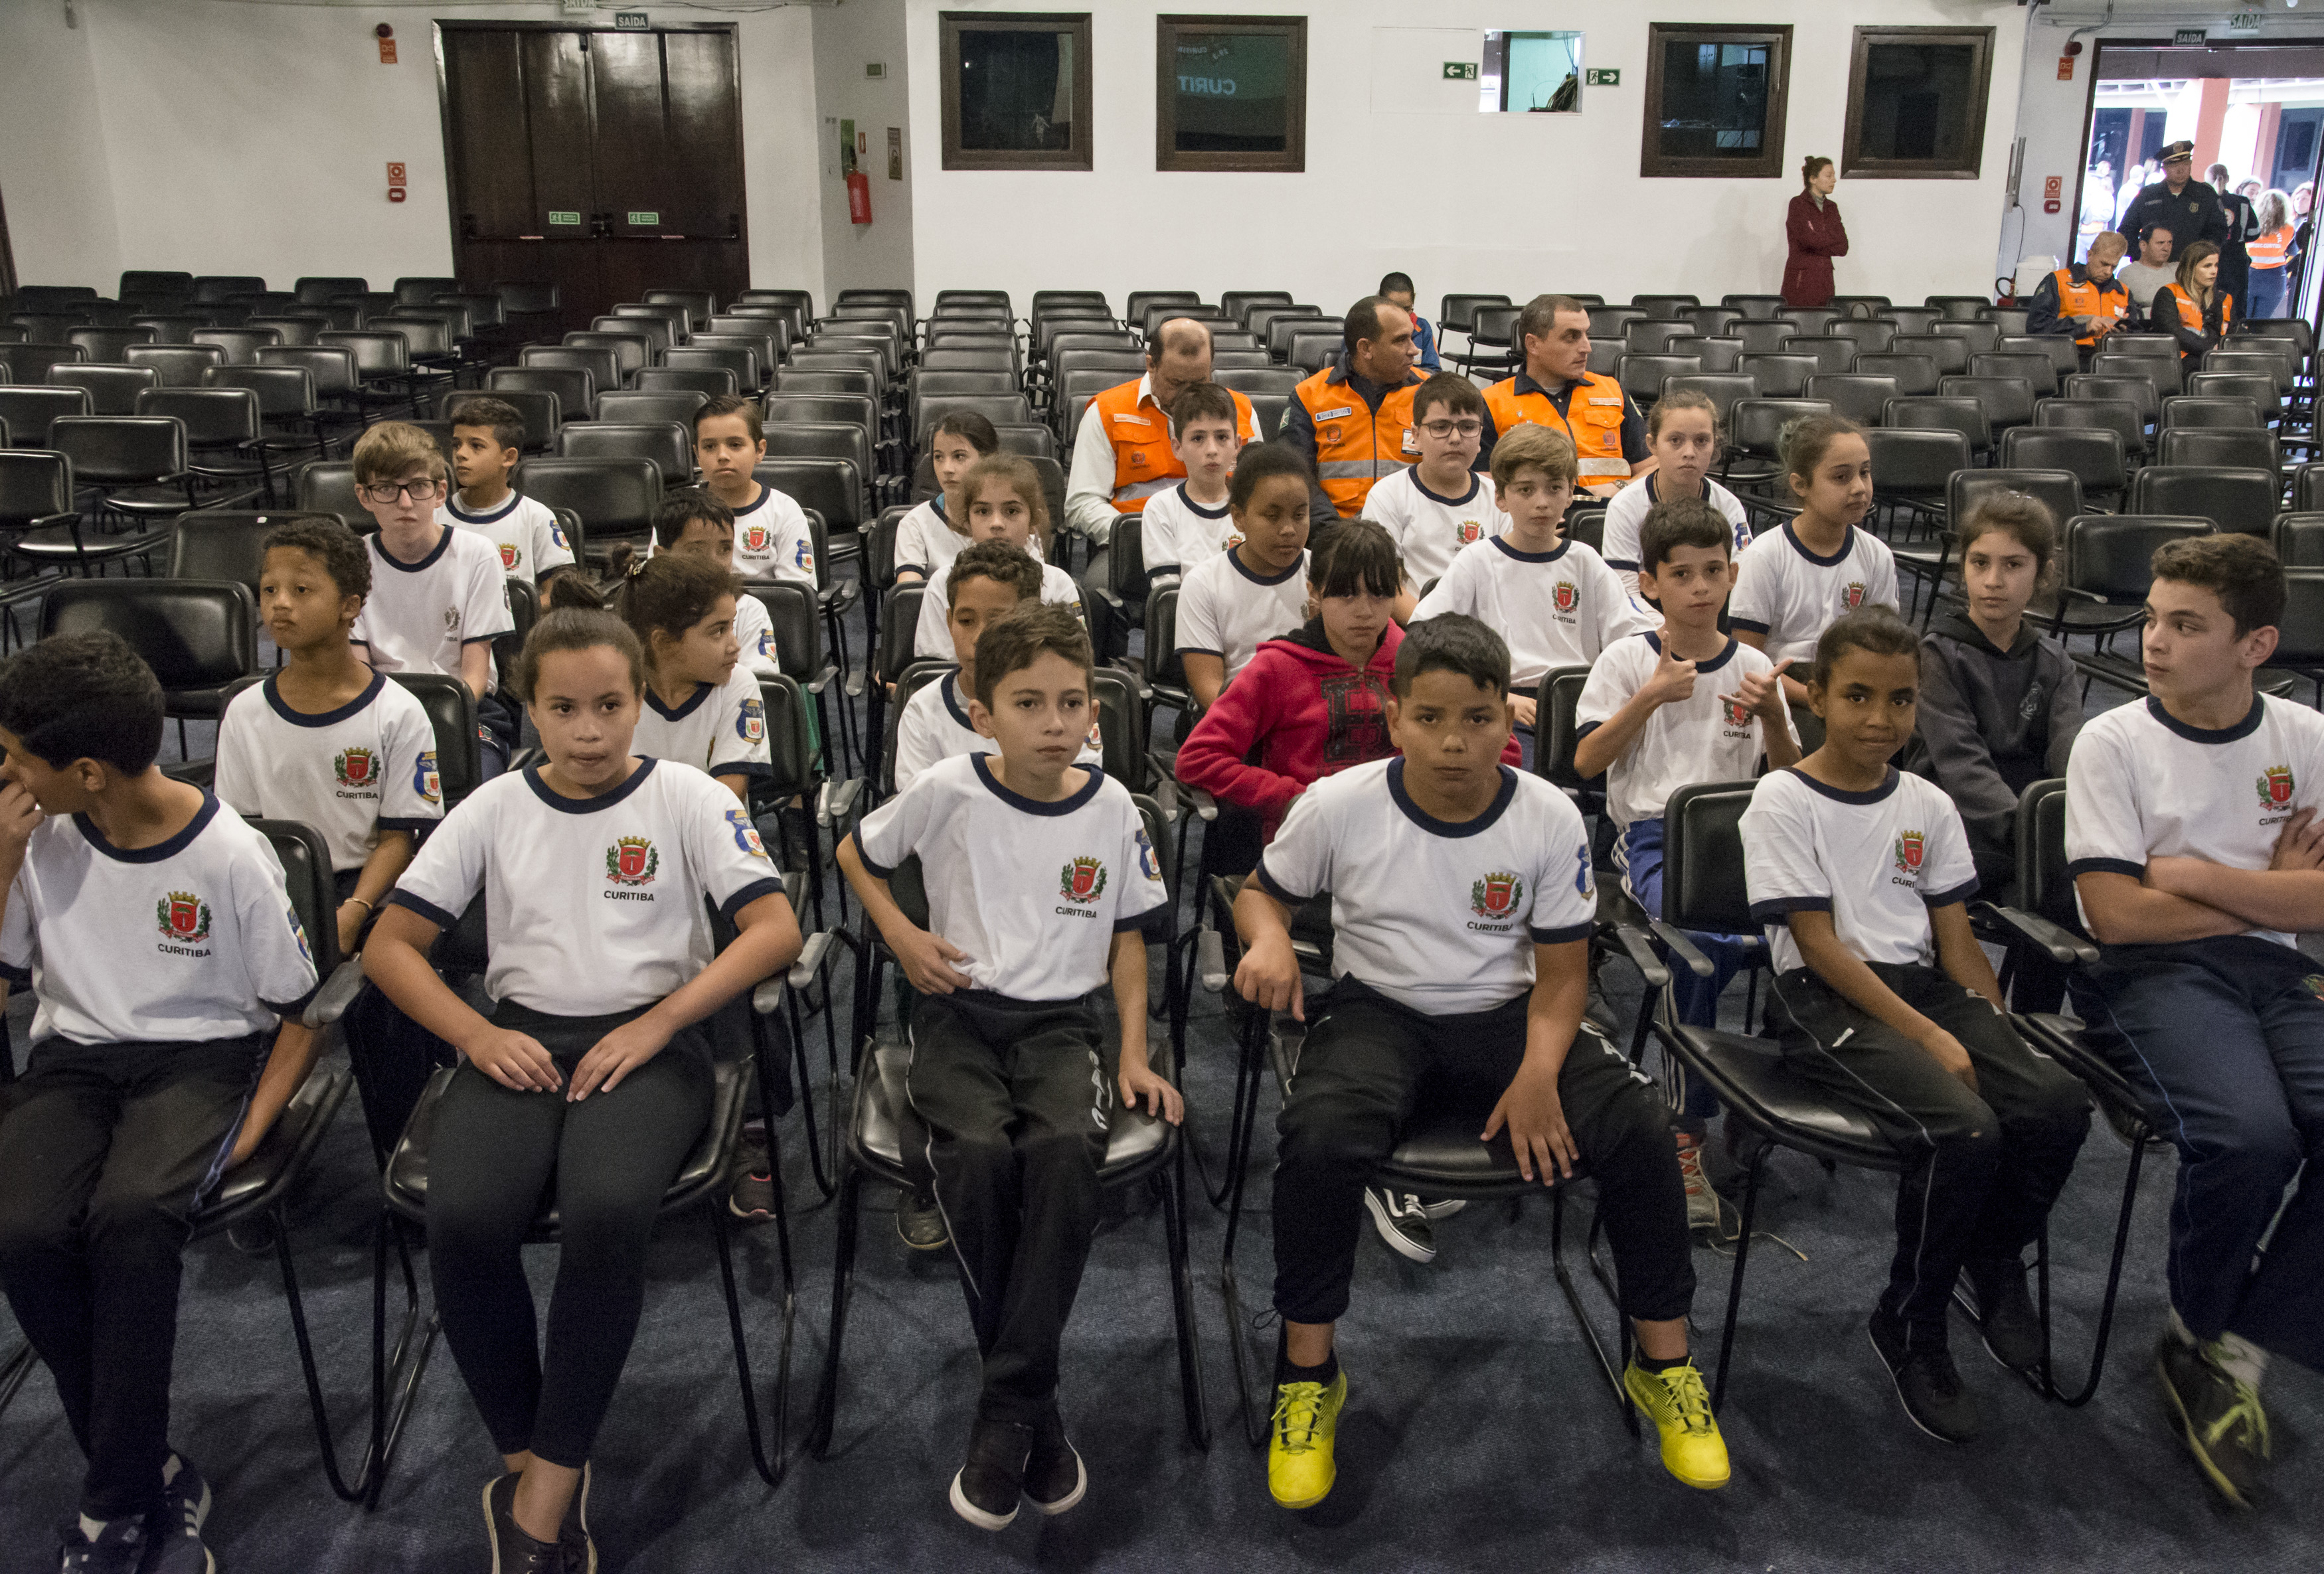 Escola de Caraguatatuba participa de seleção para Programa First